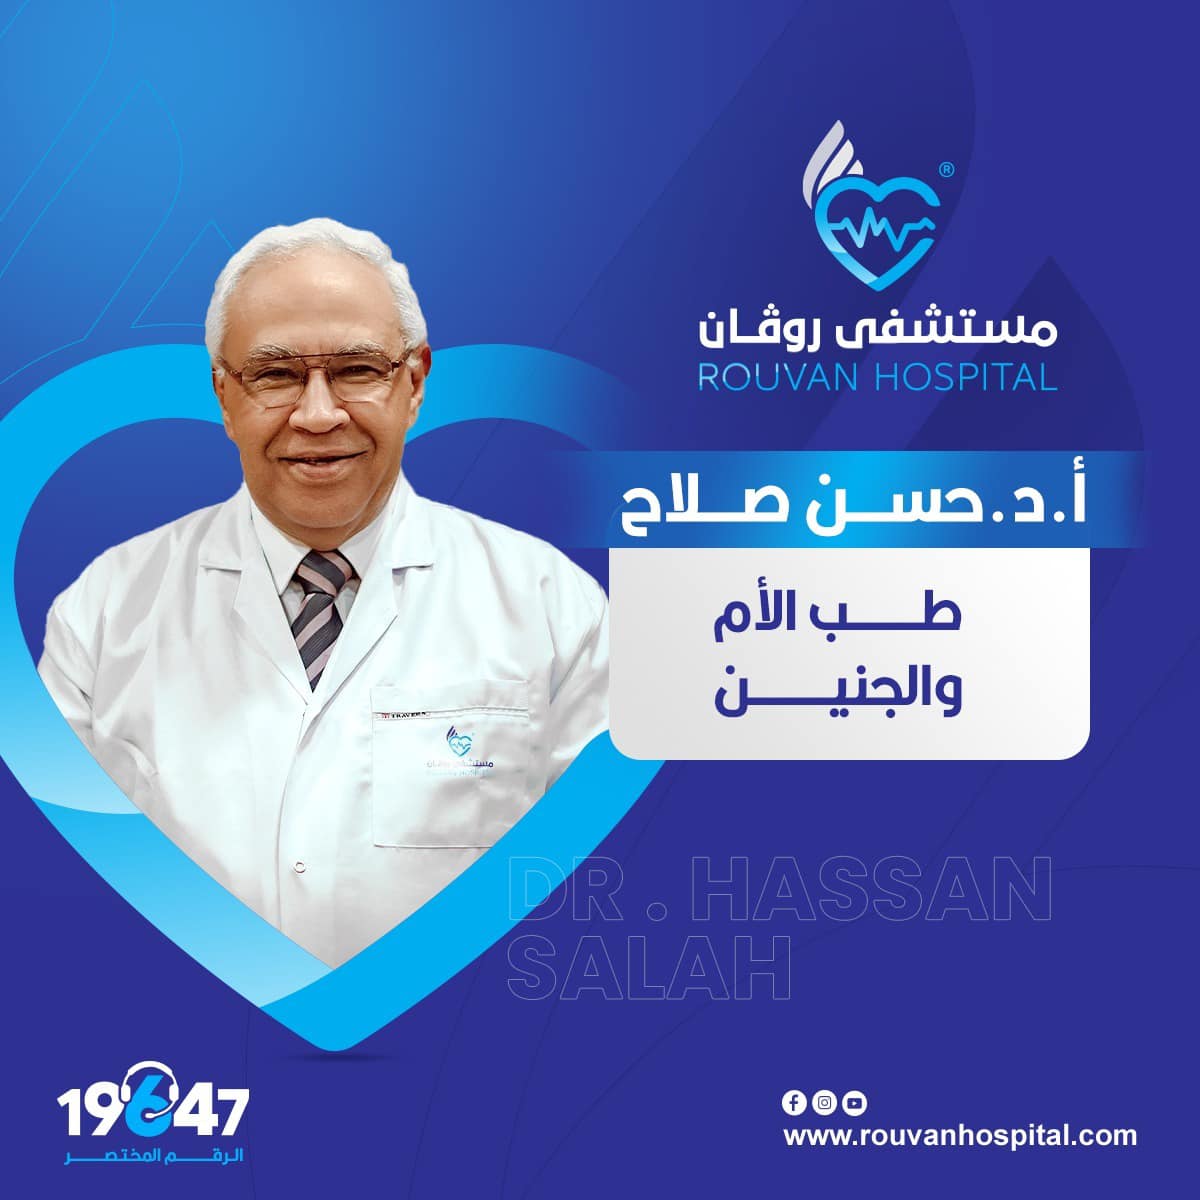 Dr. Hassan Salah